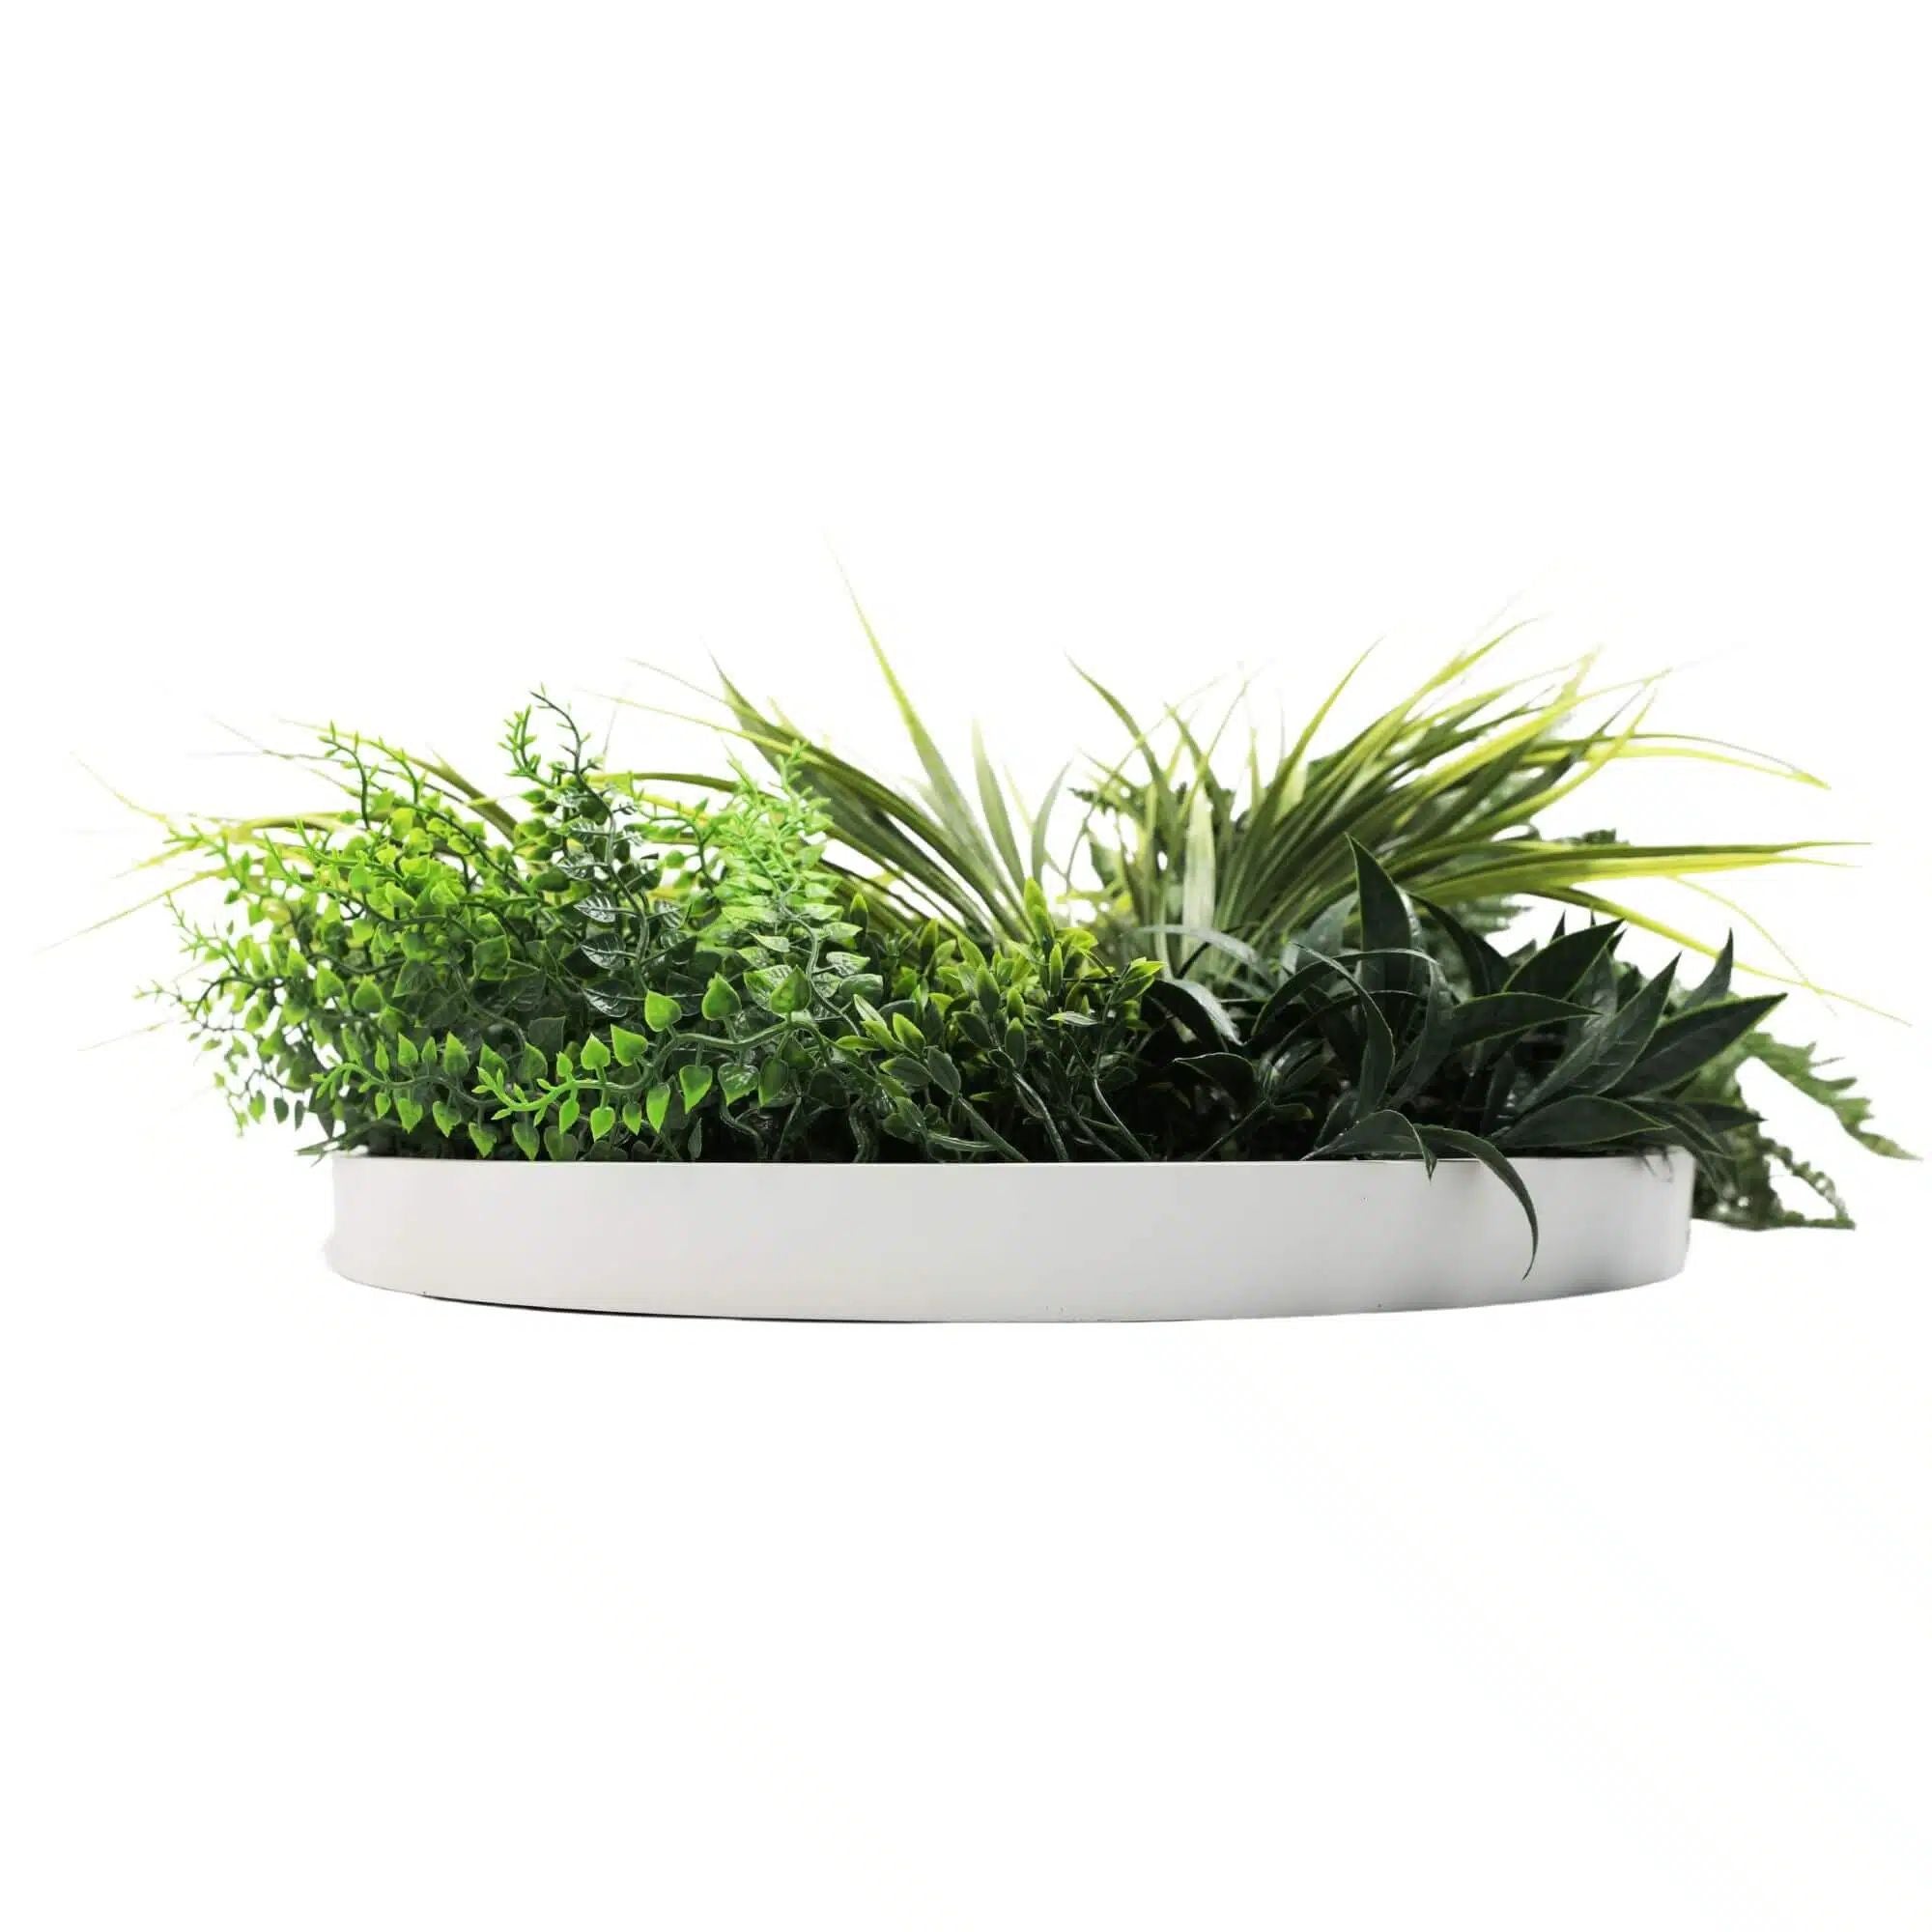 Slimline Artificial Green Wall Disc Art 50cm White Grassy UV Resistant (White) - Designer Vertical Gardens Artificial vertical garden wall disc